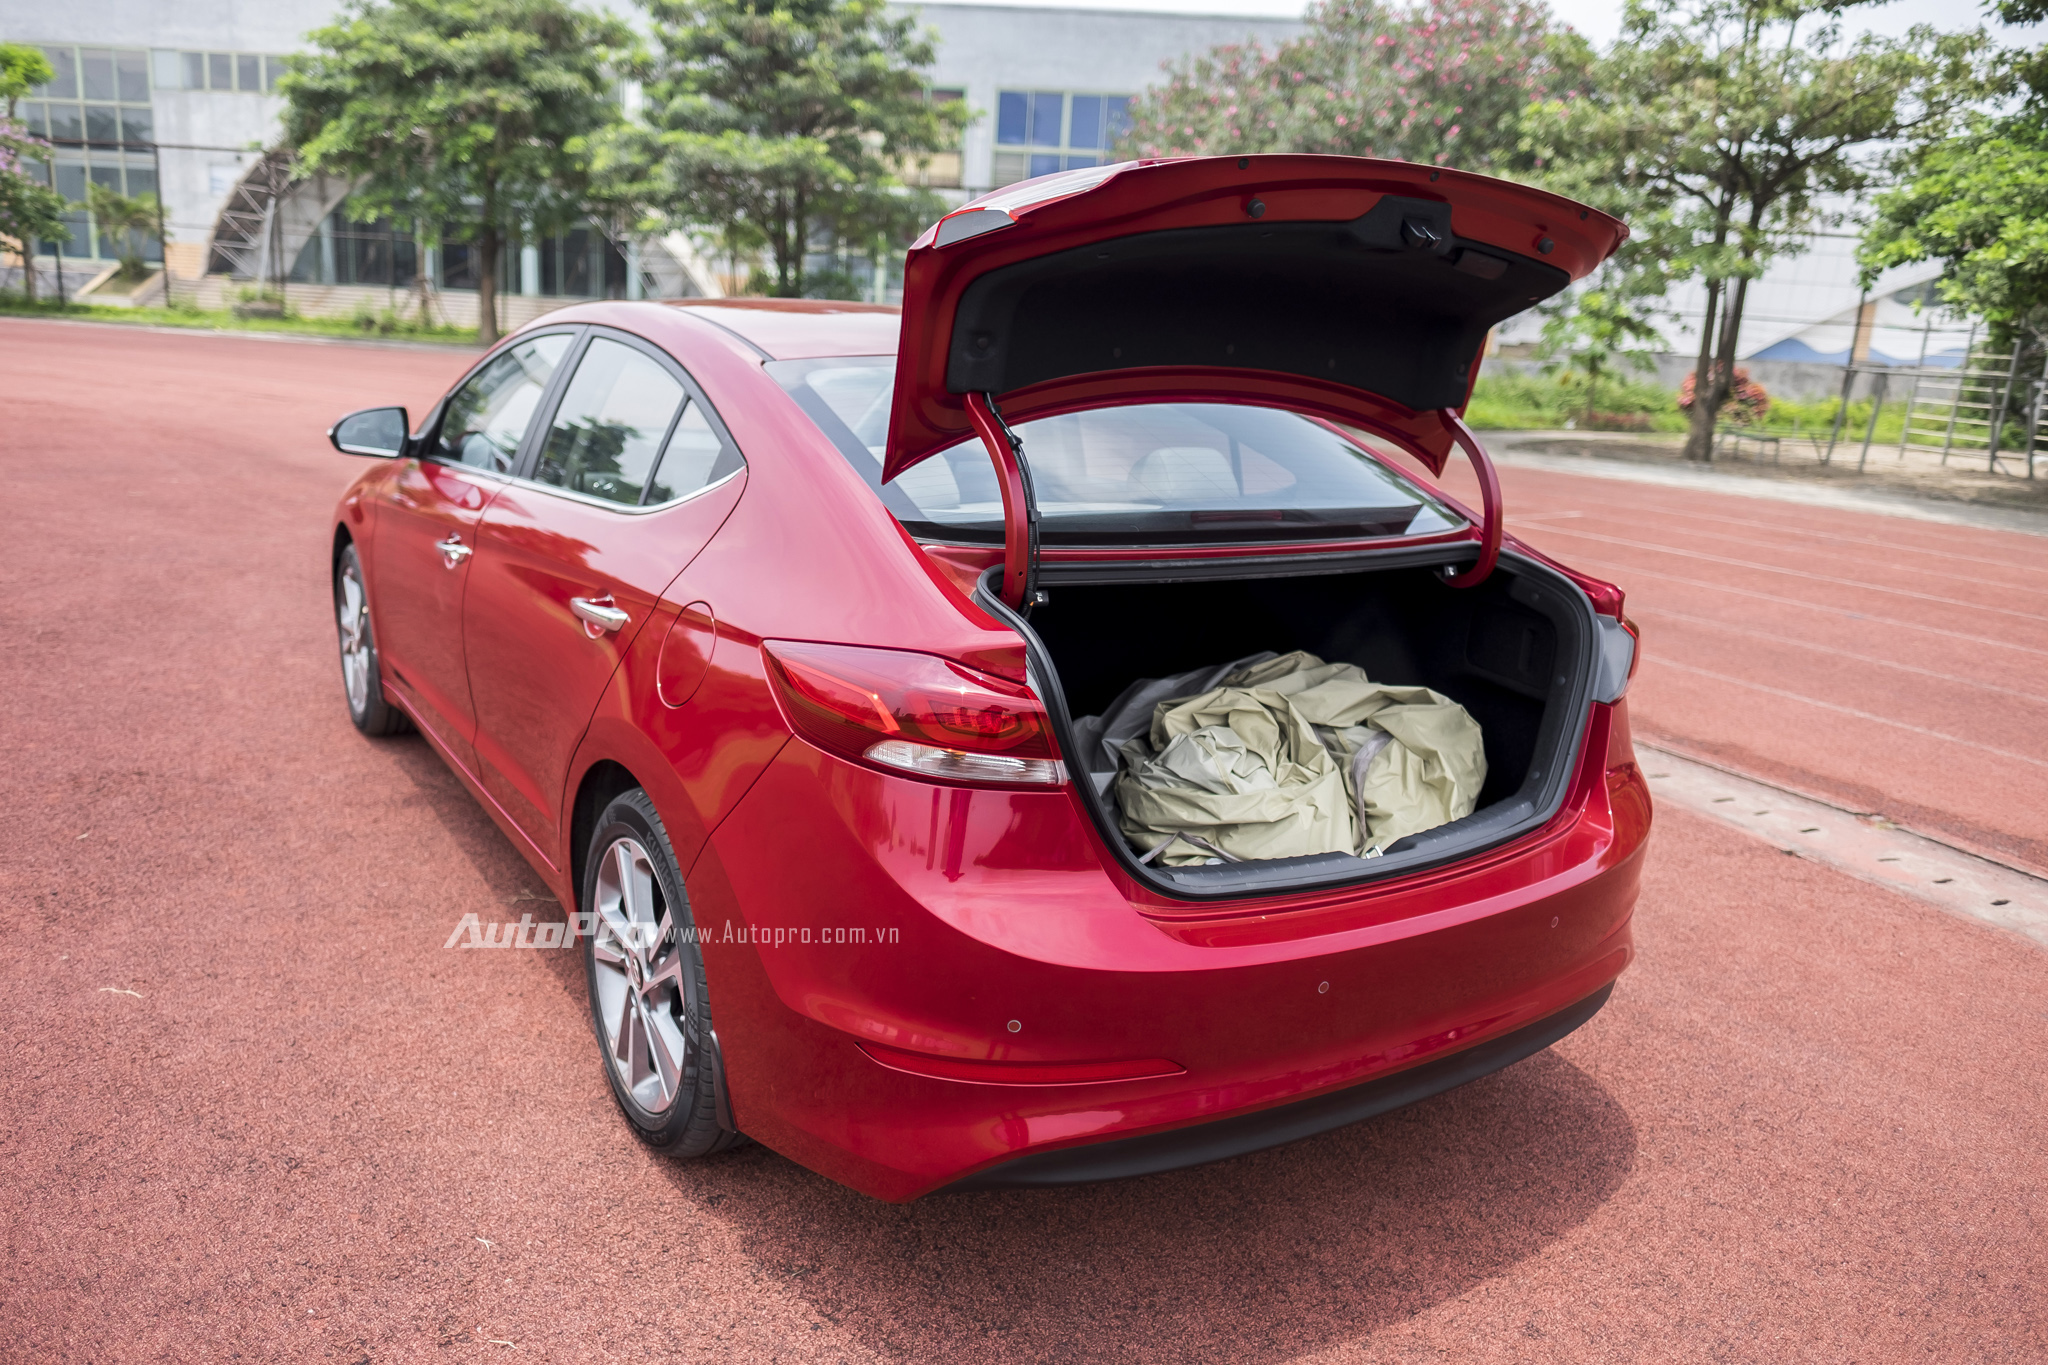 
Cốp xe của Hyundai Elantra 2016 có thể điều khiển từ xa bằng chìa khoá.
